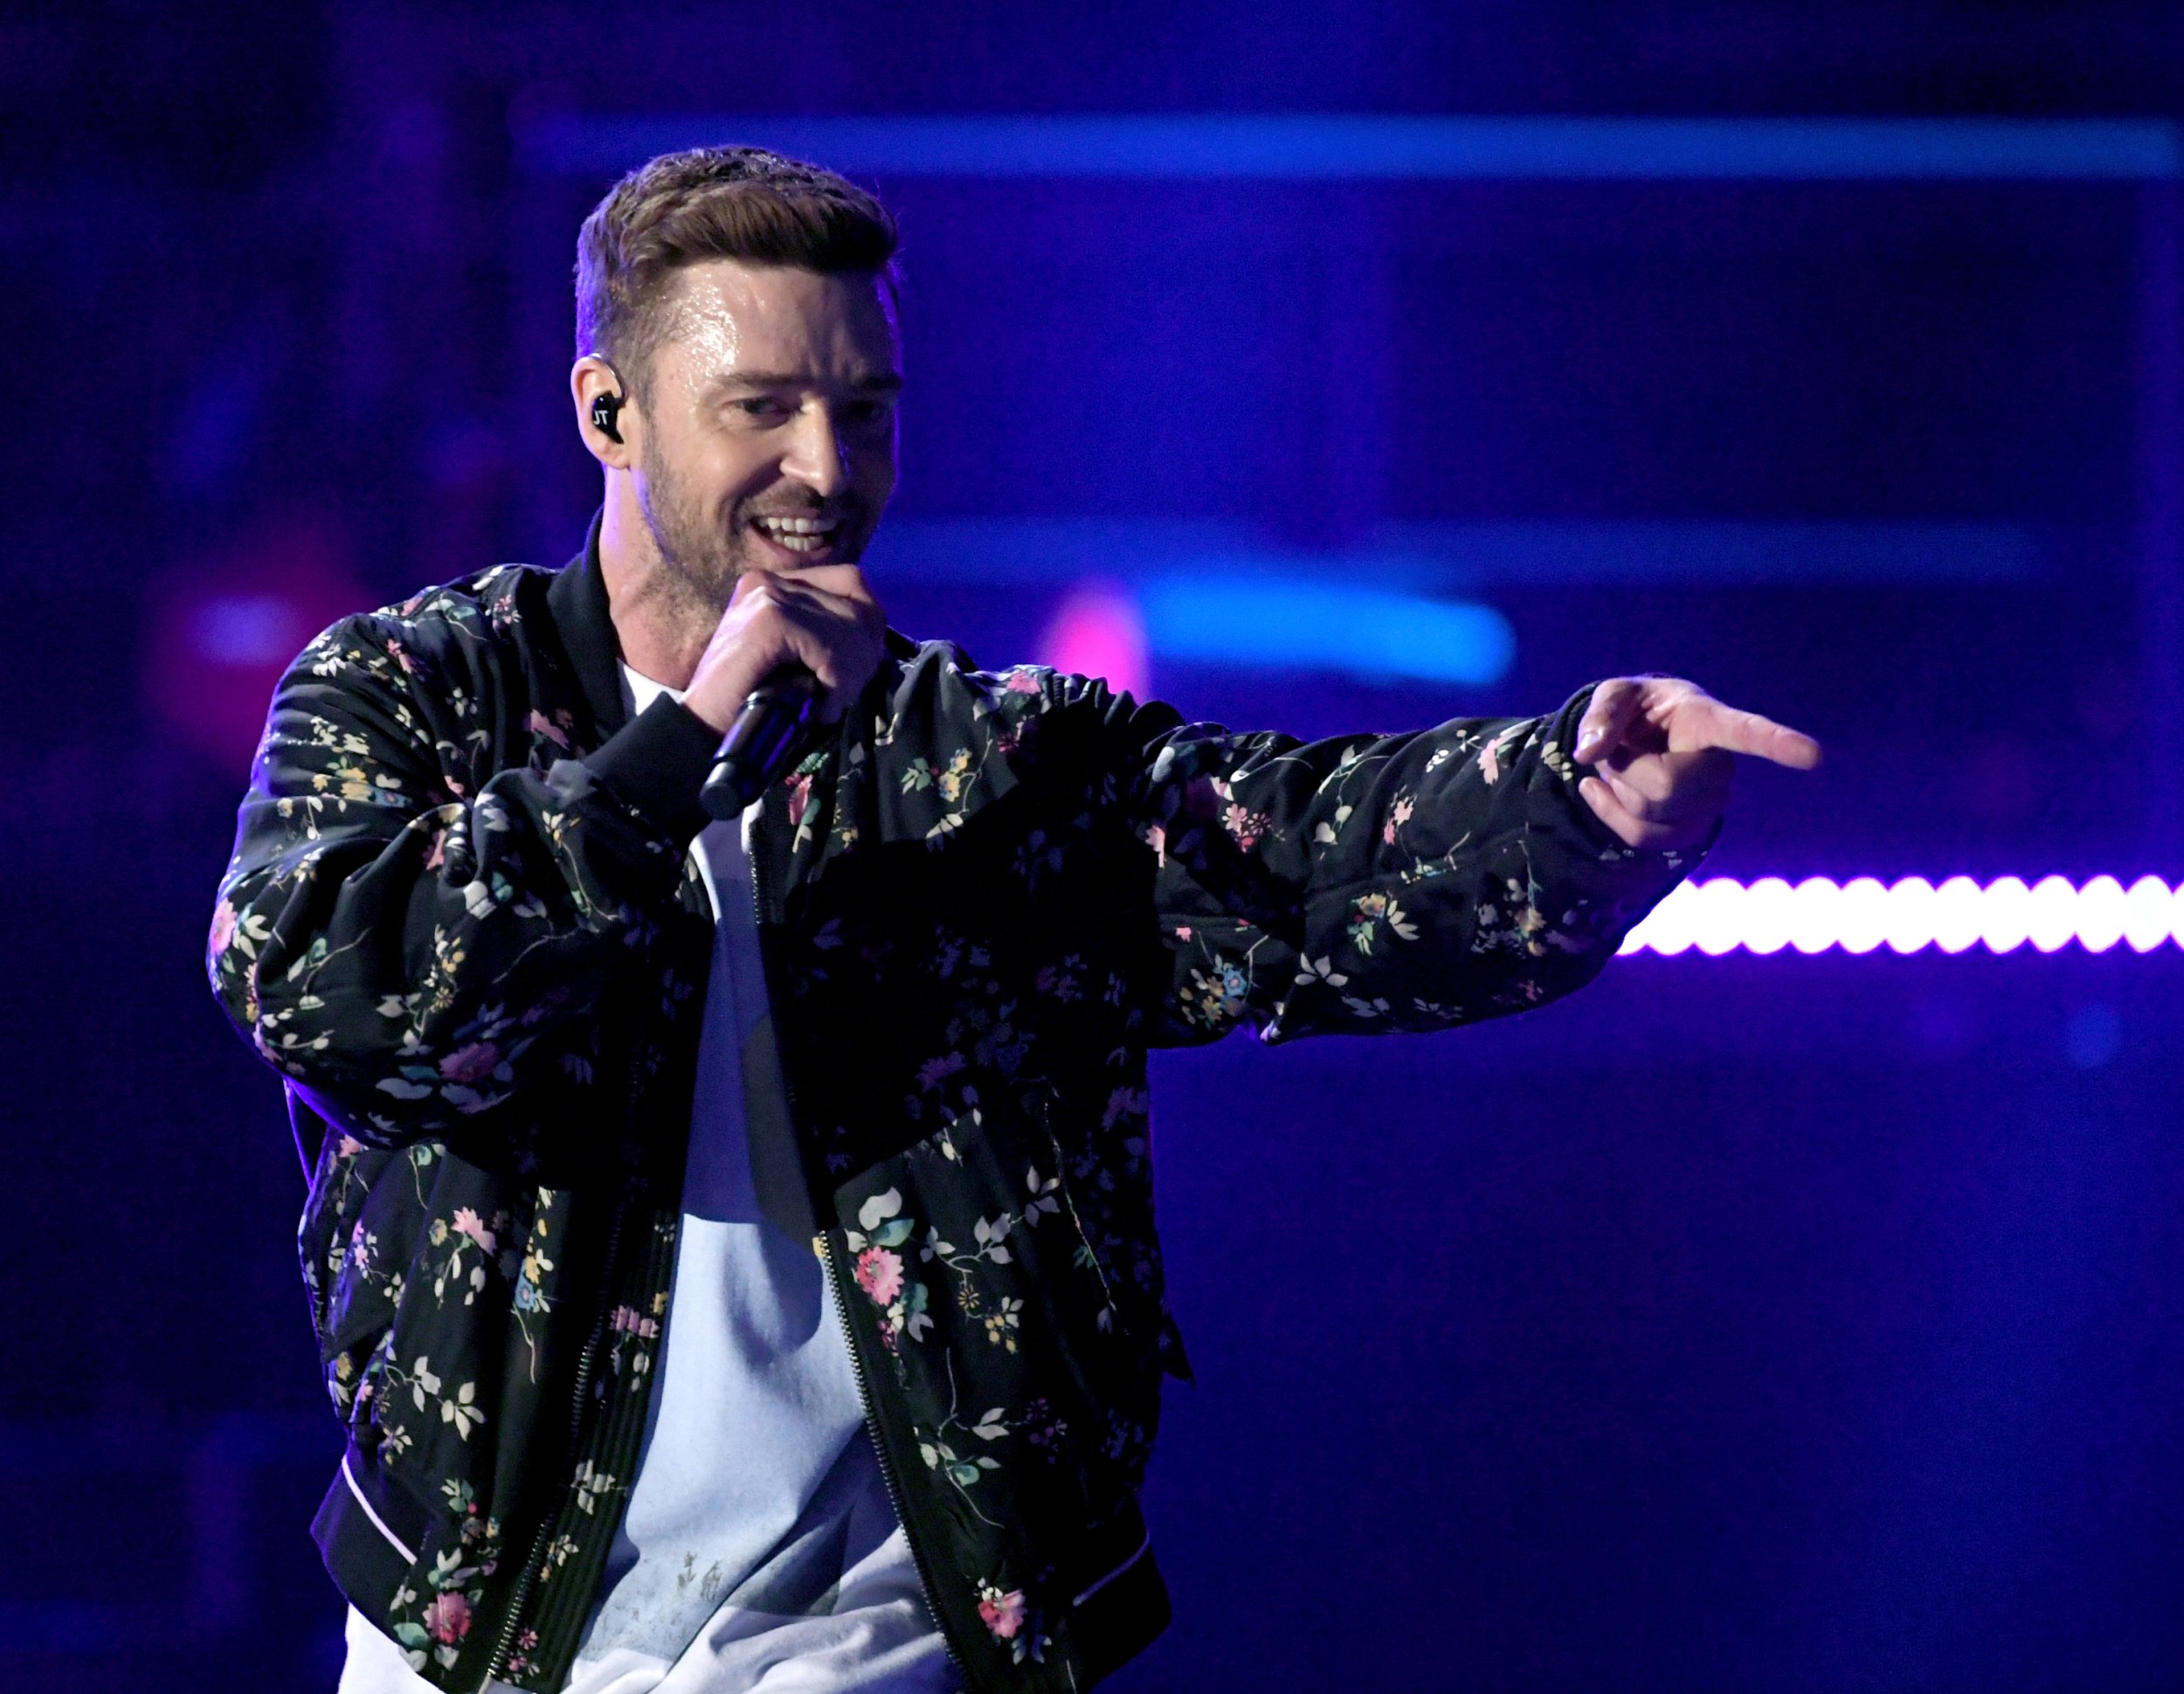 Kid Who Took Viral Justin Timberlake Super Bowl Selfie Gets Arrested